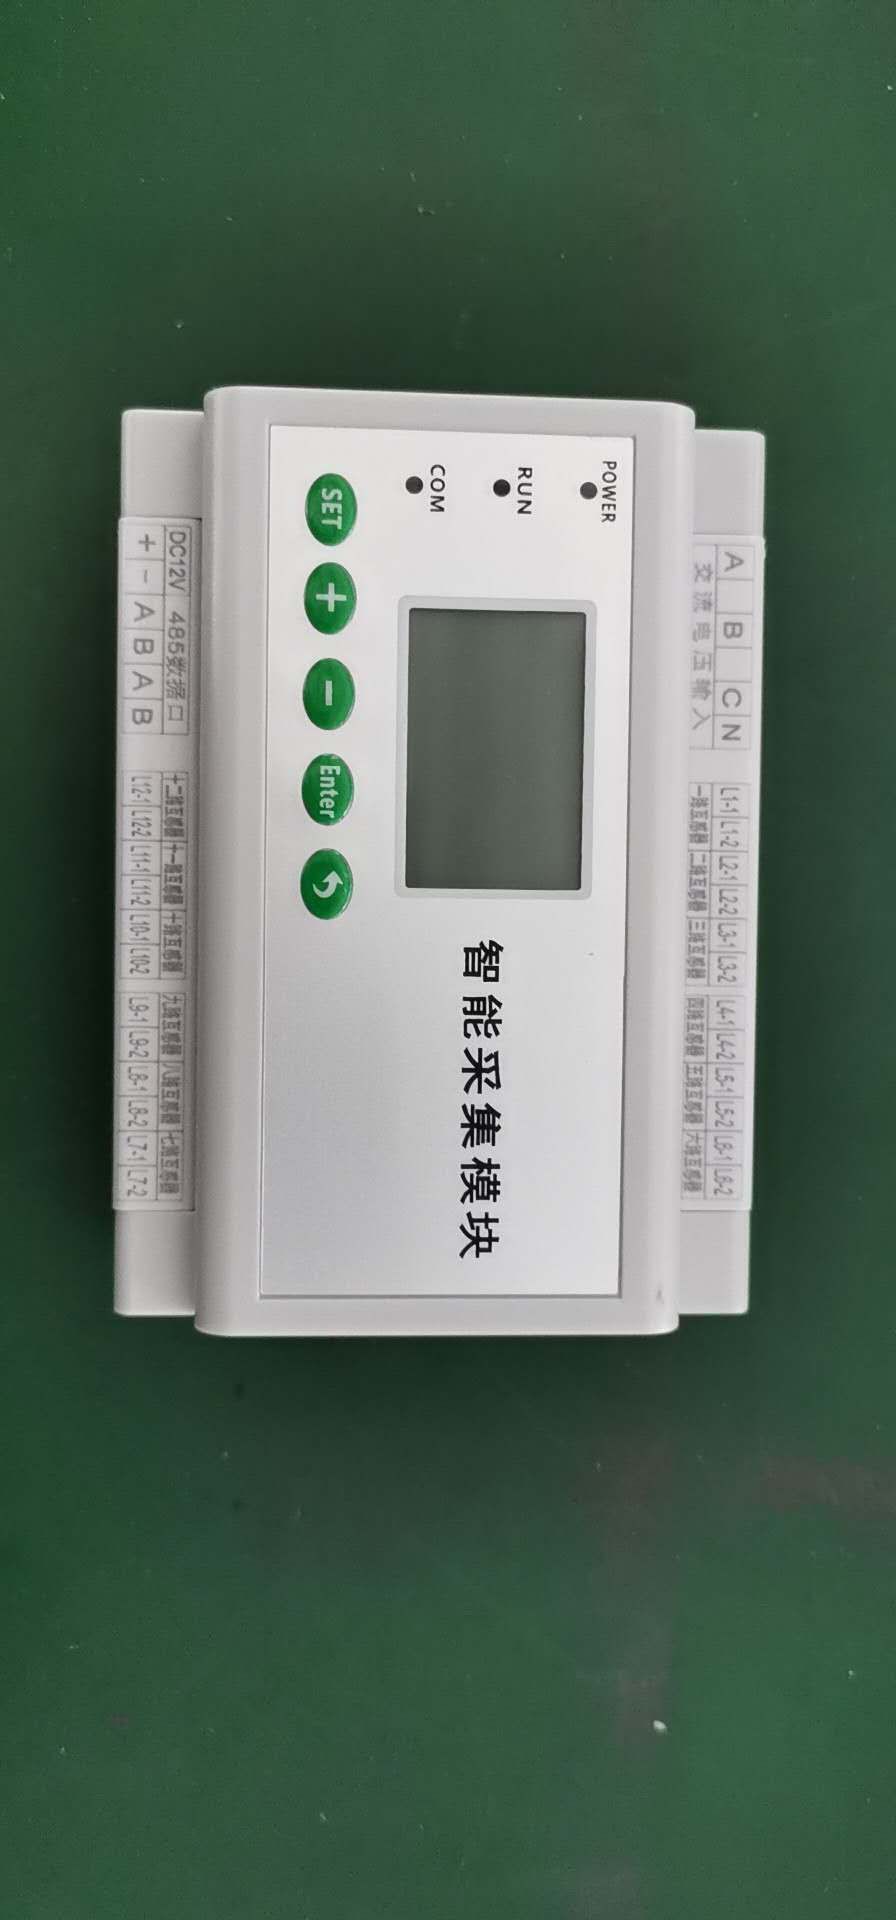 柳州SPM33-0816C智能照明控制器